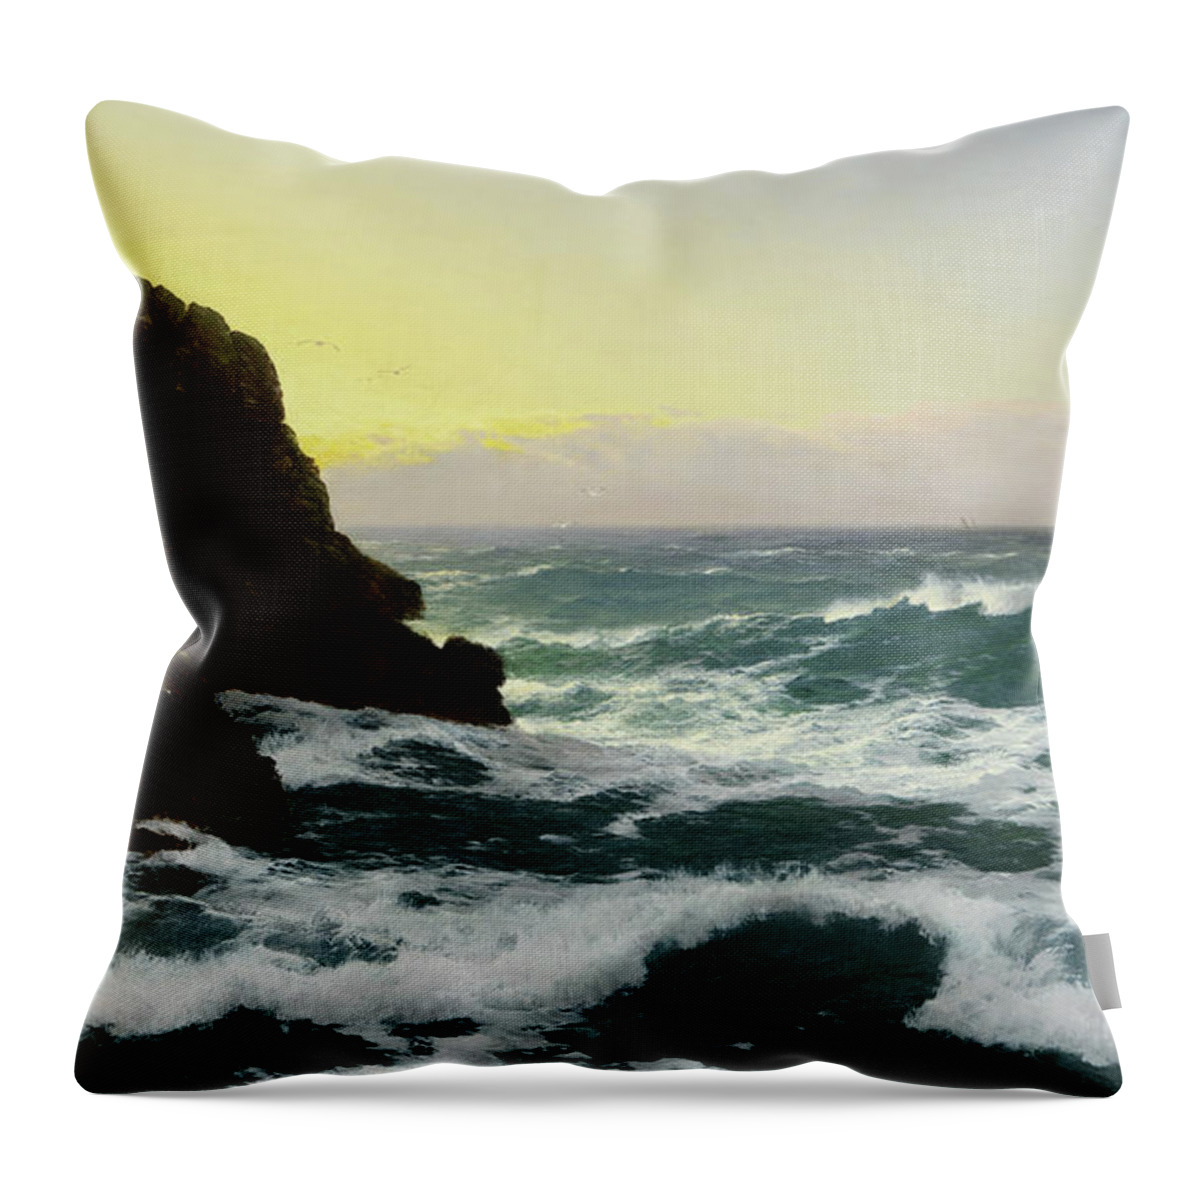 David James Throw Pillow featuring the painting Evening, Cornish Coast, 1891 by David James